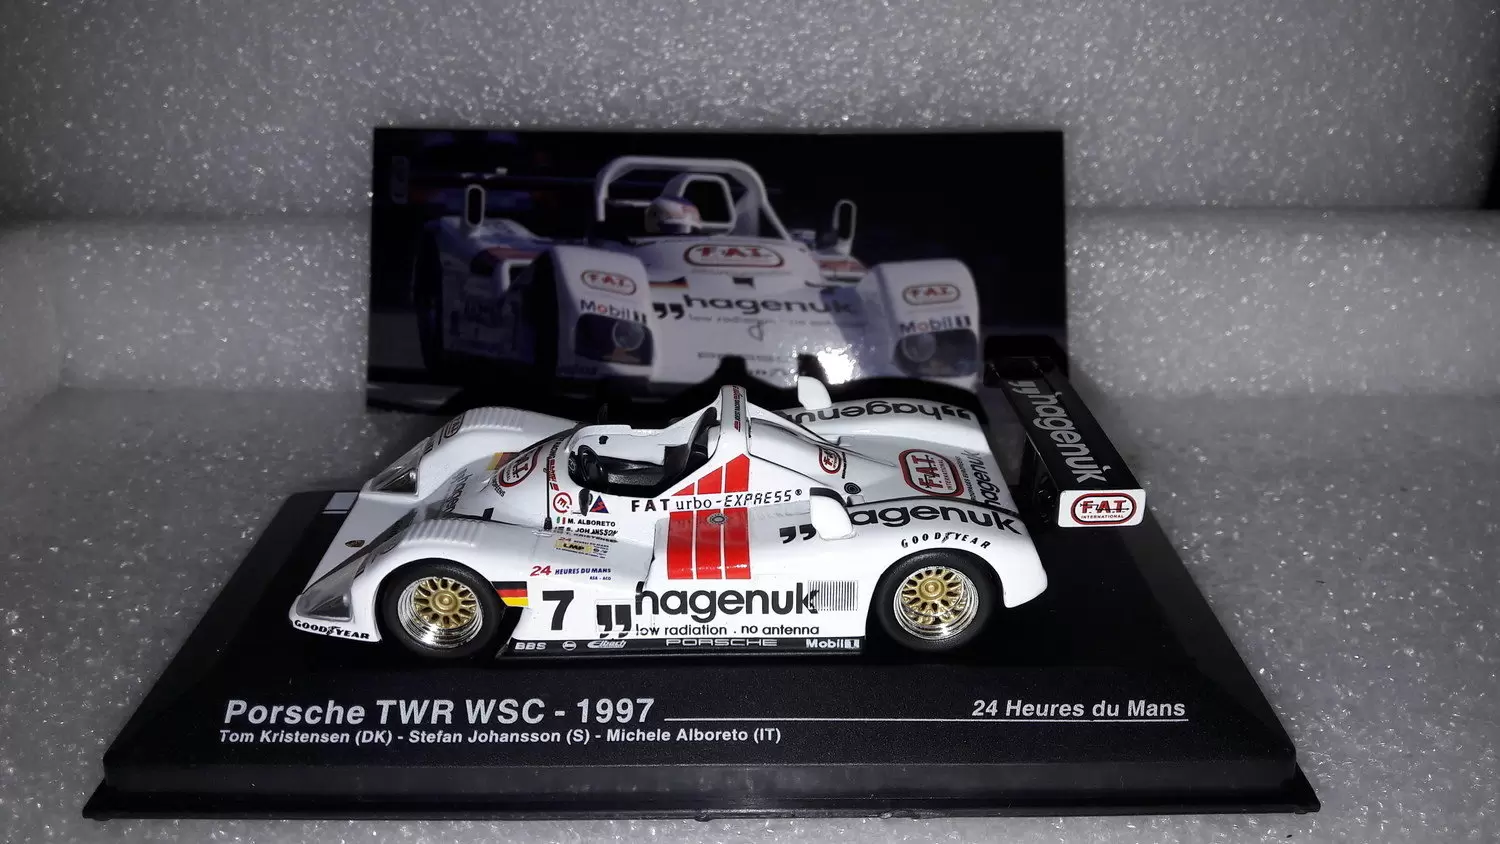 24h du mans Echelle 1/43 - Porsche TWR WSC - Le Mans